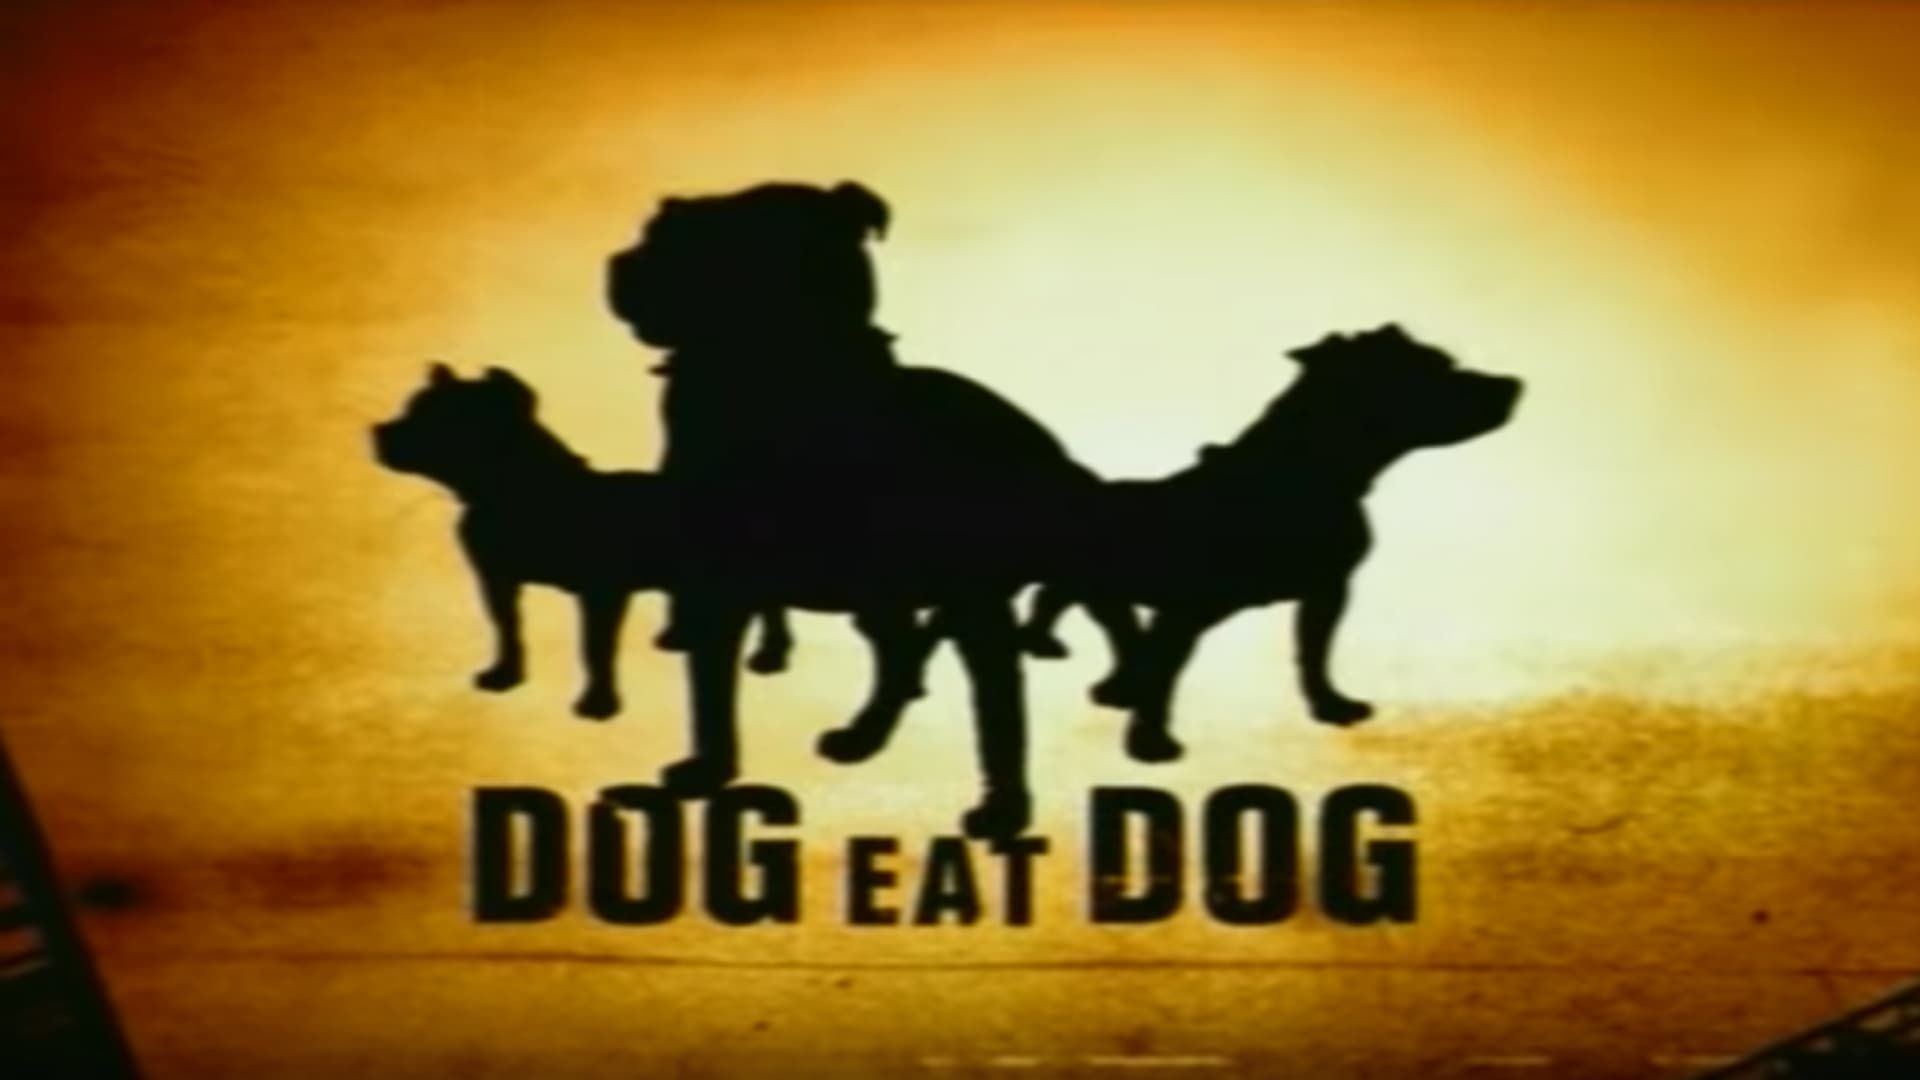 Dog Eat Dog background